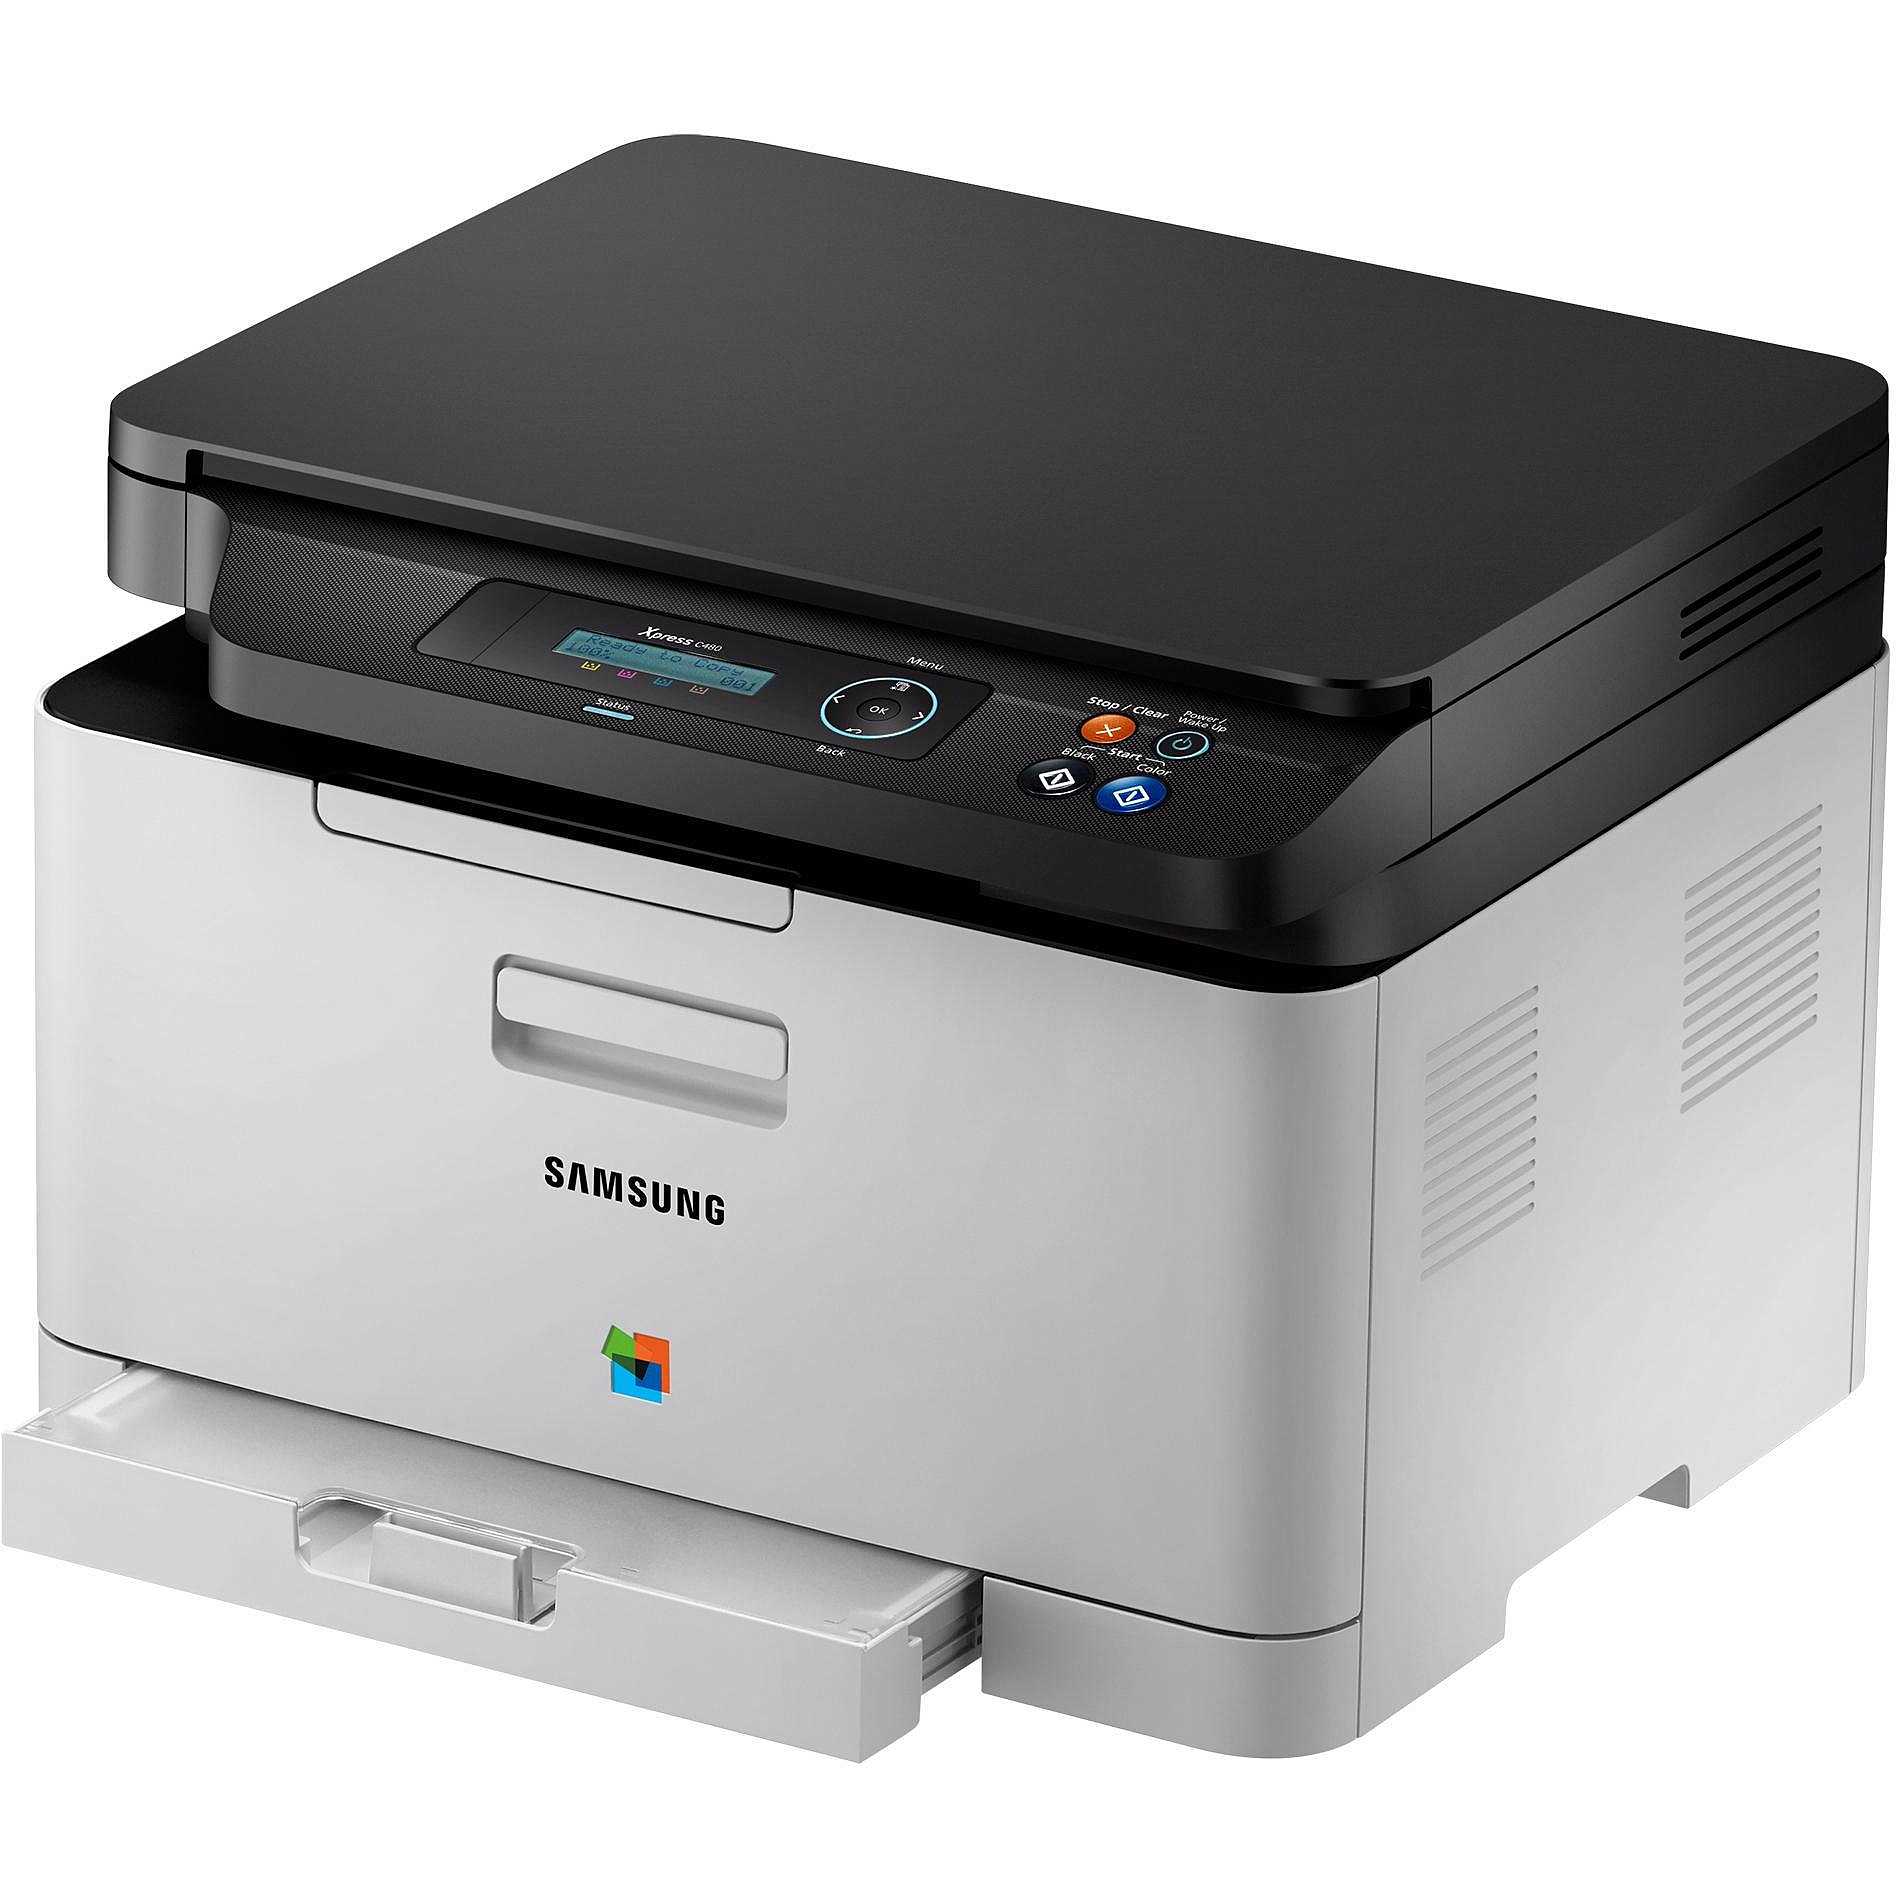 SL-C480/SEE Samsung stampante multifunzione laser a colori colore